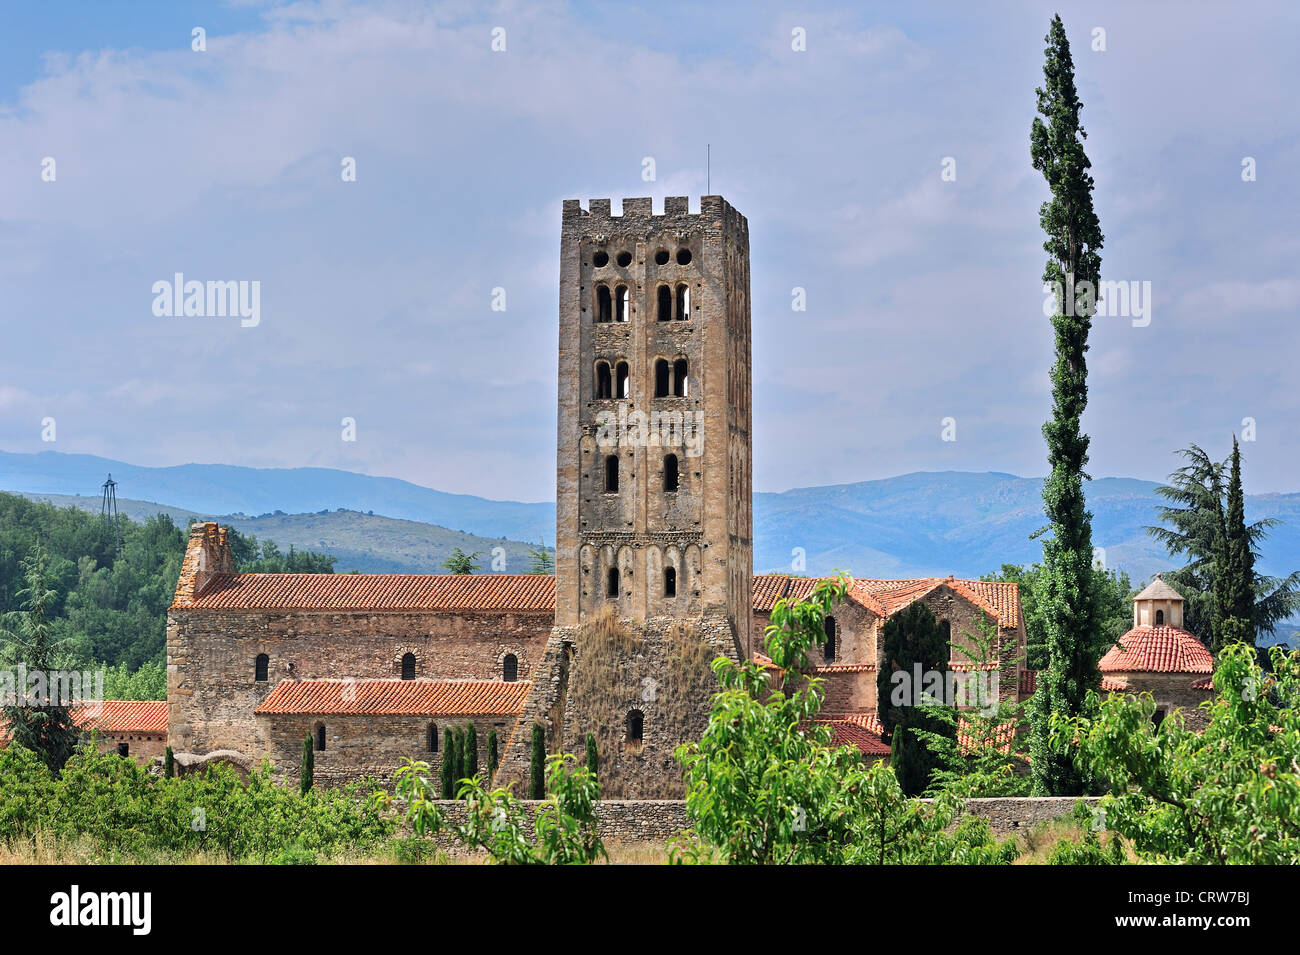 Die Abtei Saint-Michel-de-Cuxa / Sant Miquel de Cuixà, einer Benediktiner-Abtei in Codalet, Pyrénées-Orientales, Pyrenäen, Frankreich Stockfoto